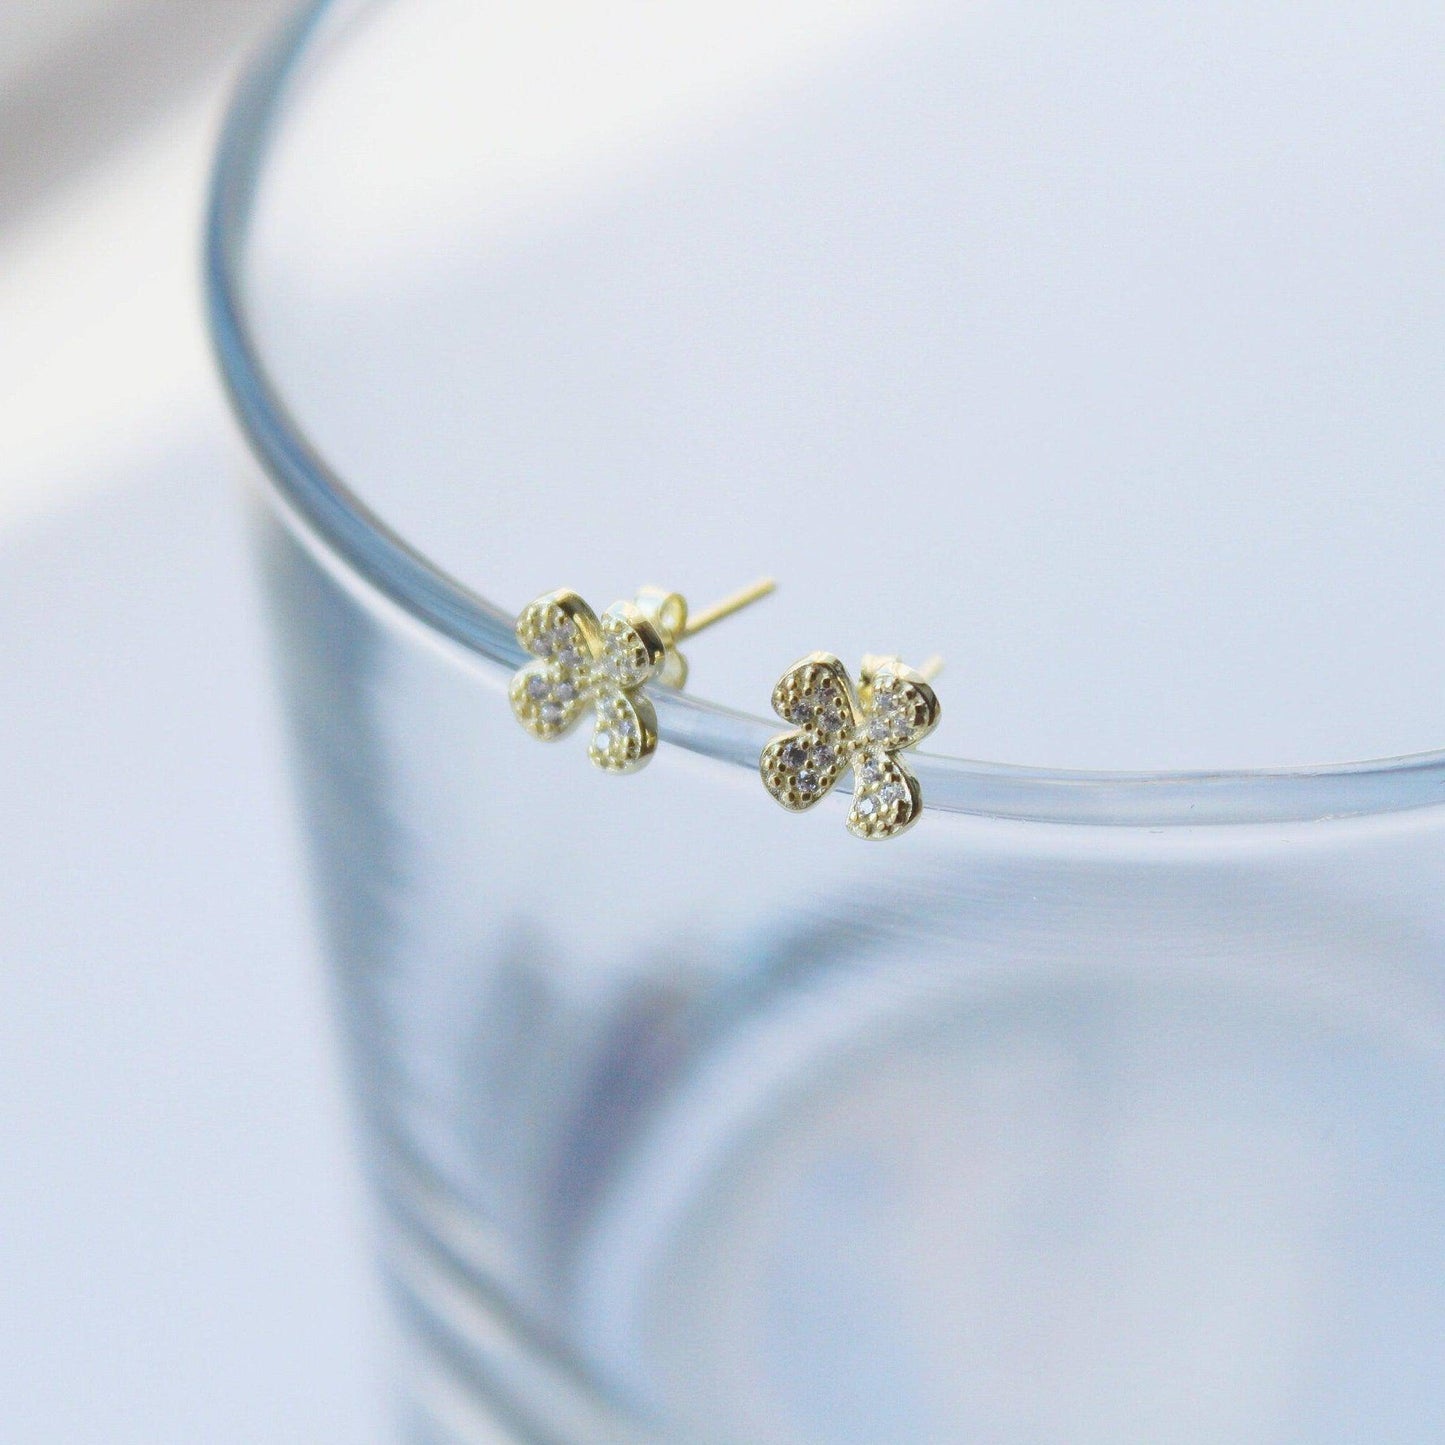 Shamrock Earrings - Gold Four leaf Clover Sterling Silver Stud Earrings-Ninaouity